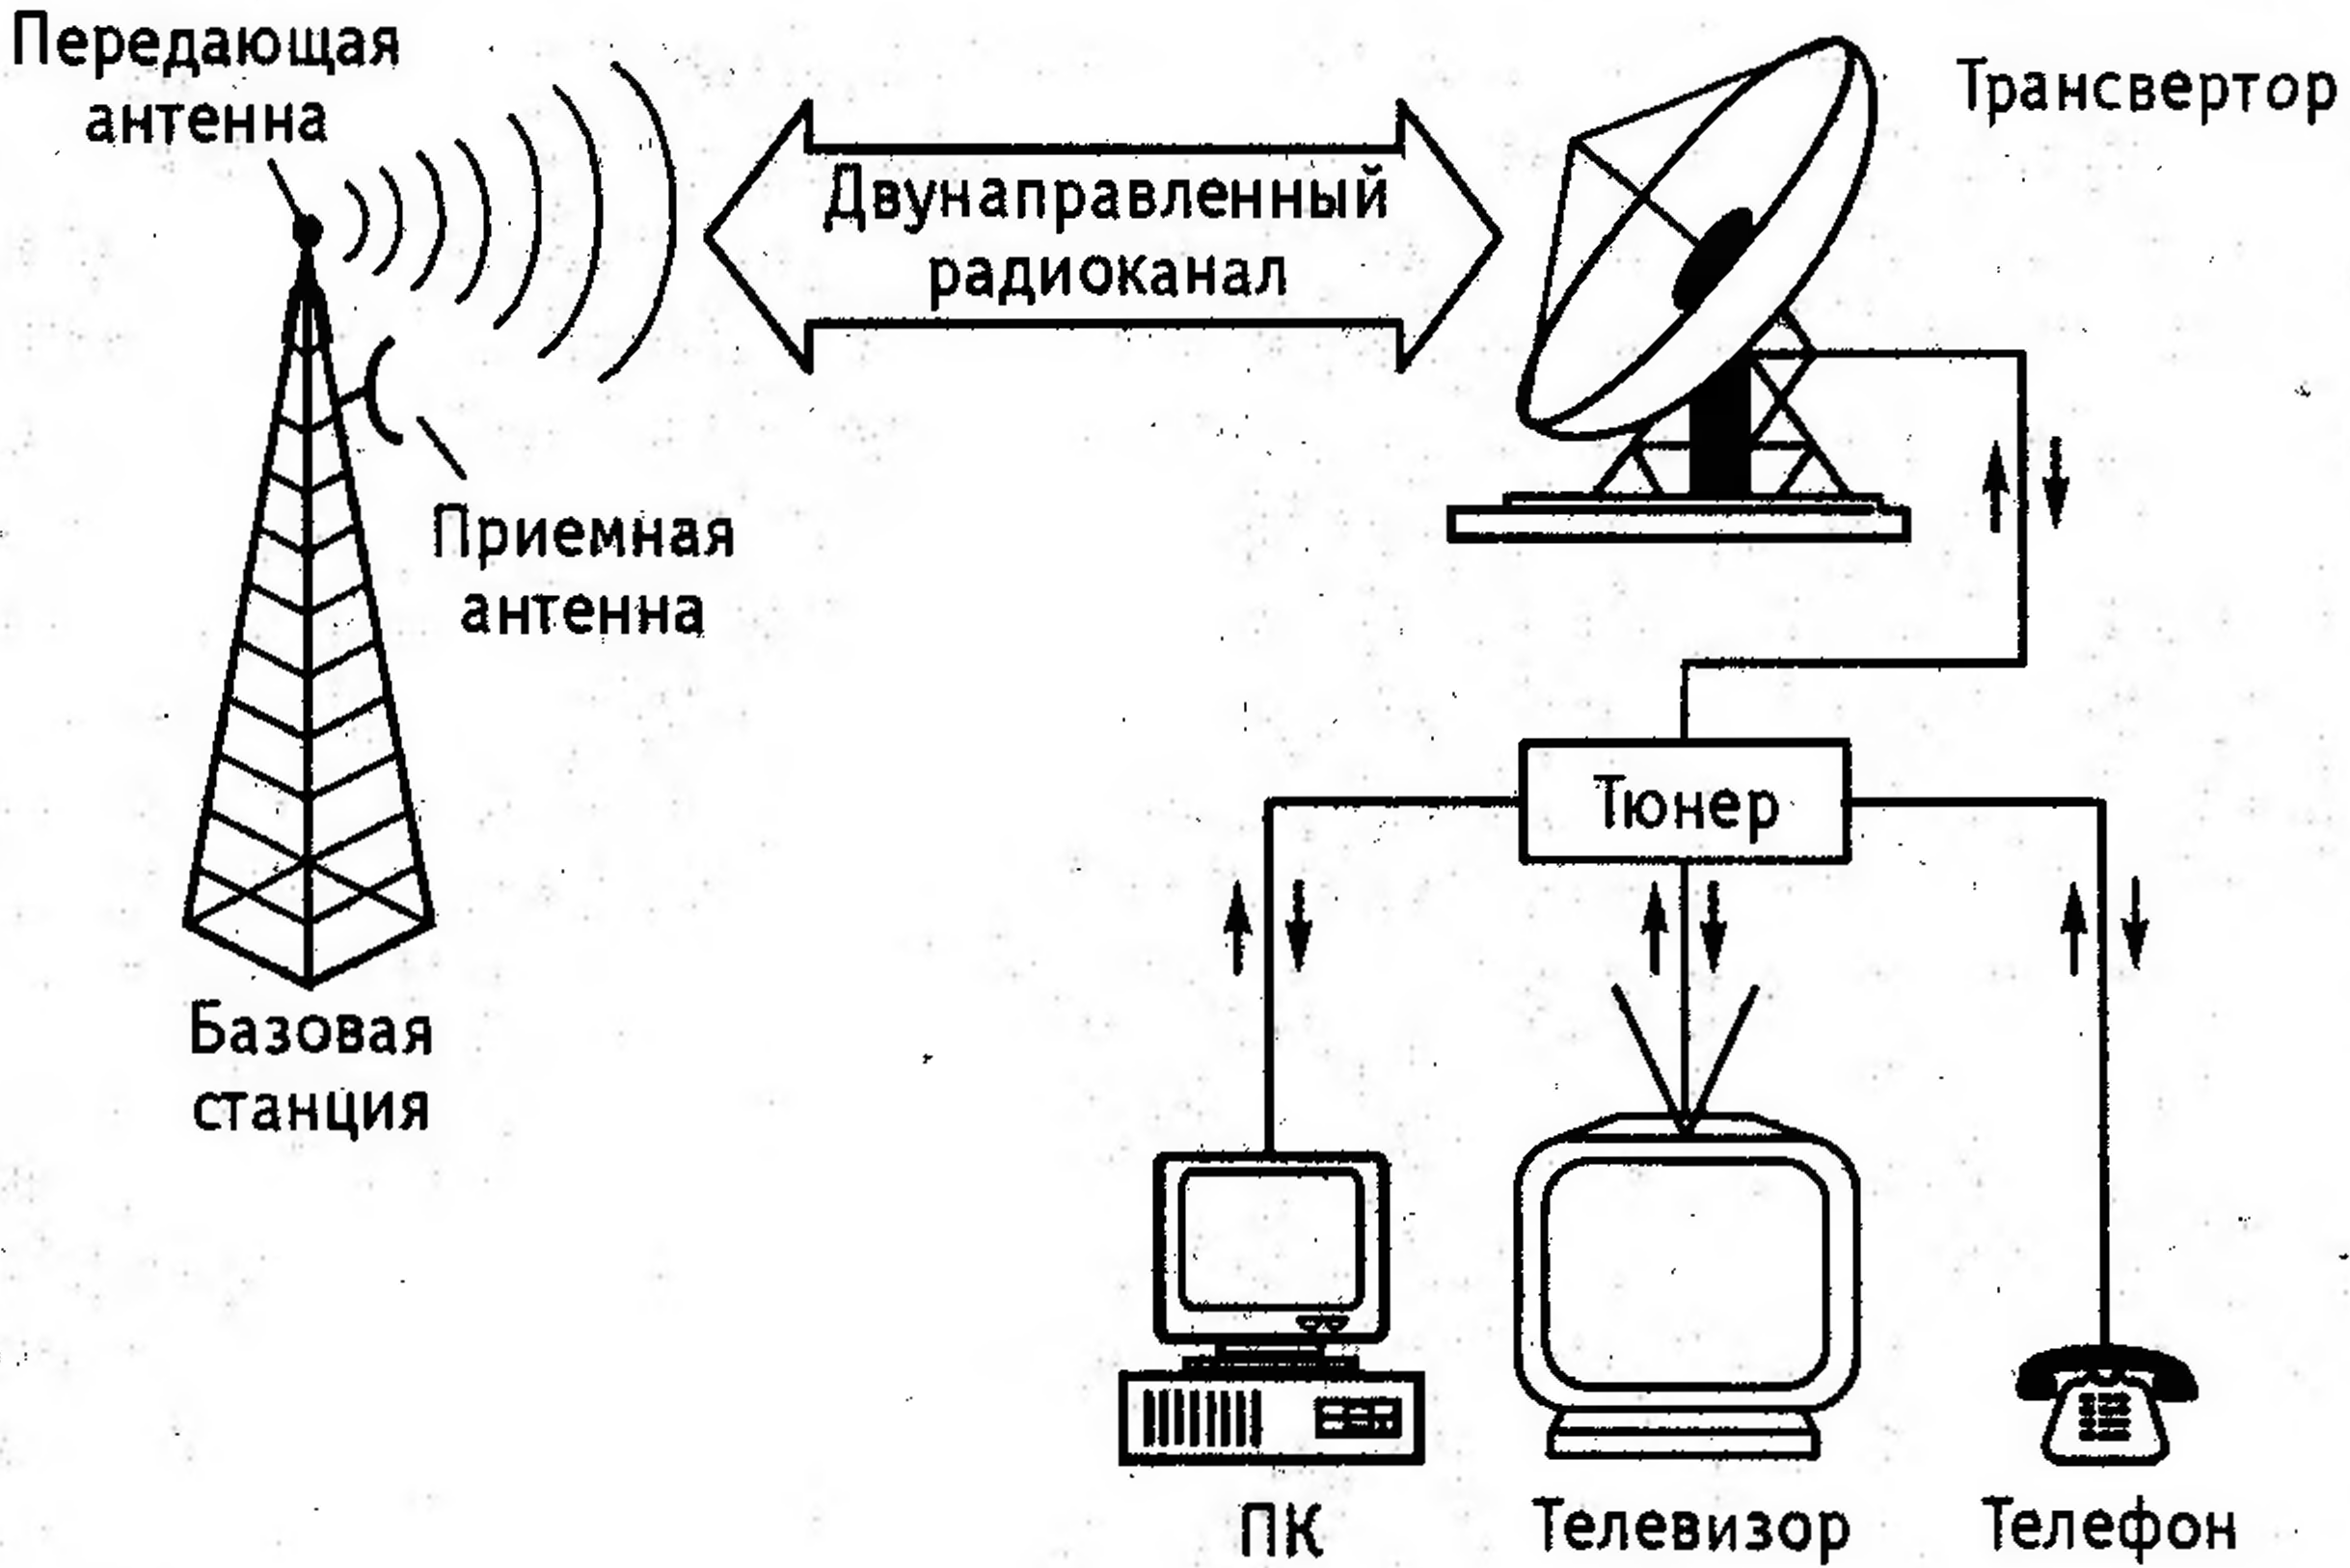 Прием и передача звука. Эфирное радиовещание схема. Структурная схема передвижной телевизионной станции. Схема передачи спутникового сигнала. Радиотелефонная связь схема.